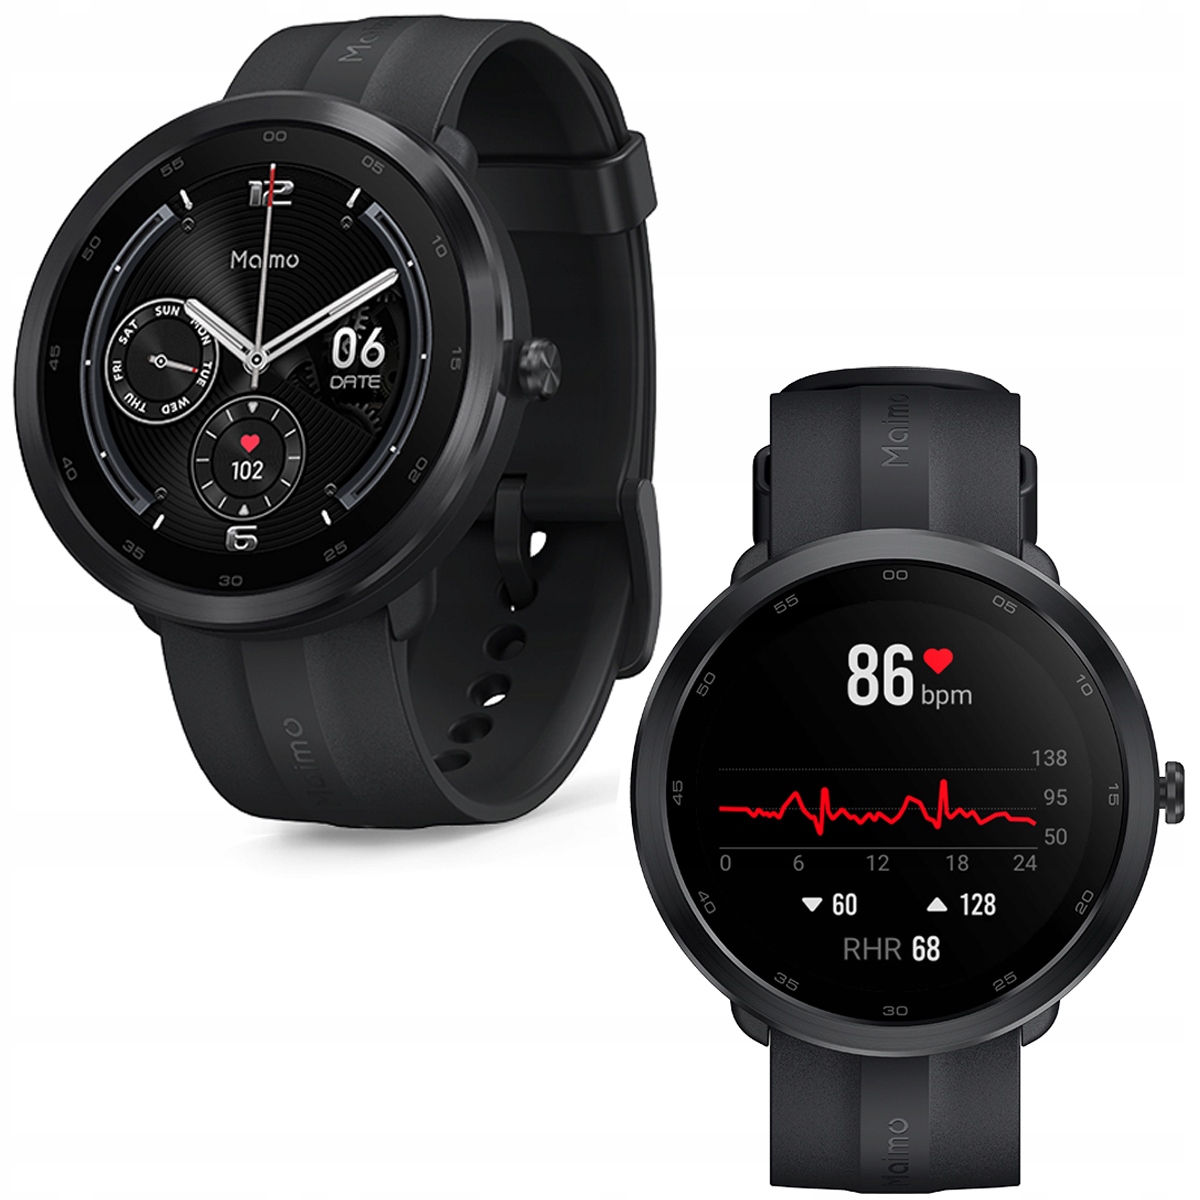 Promocja 70mai Maimo R Zegarek Smartwatch Czarny z Gps wyprzedaż przecena